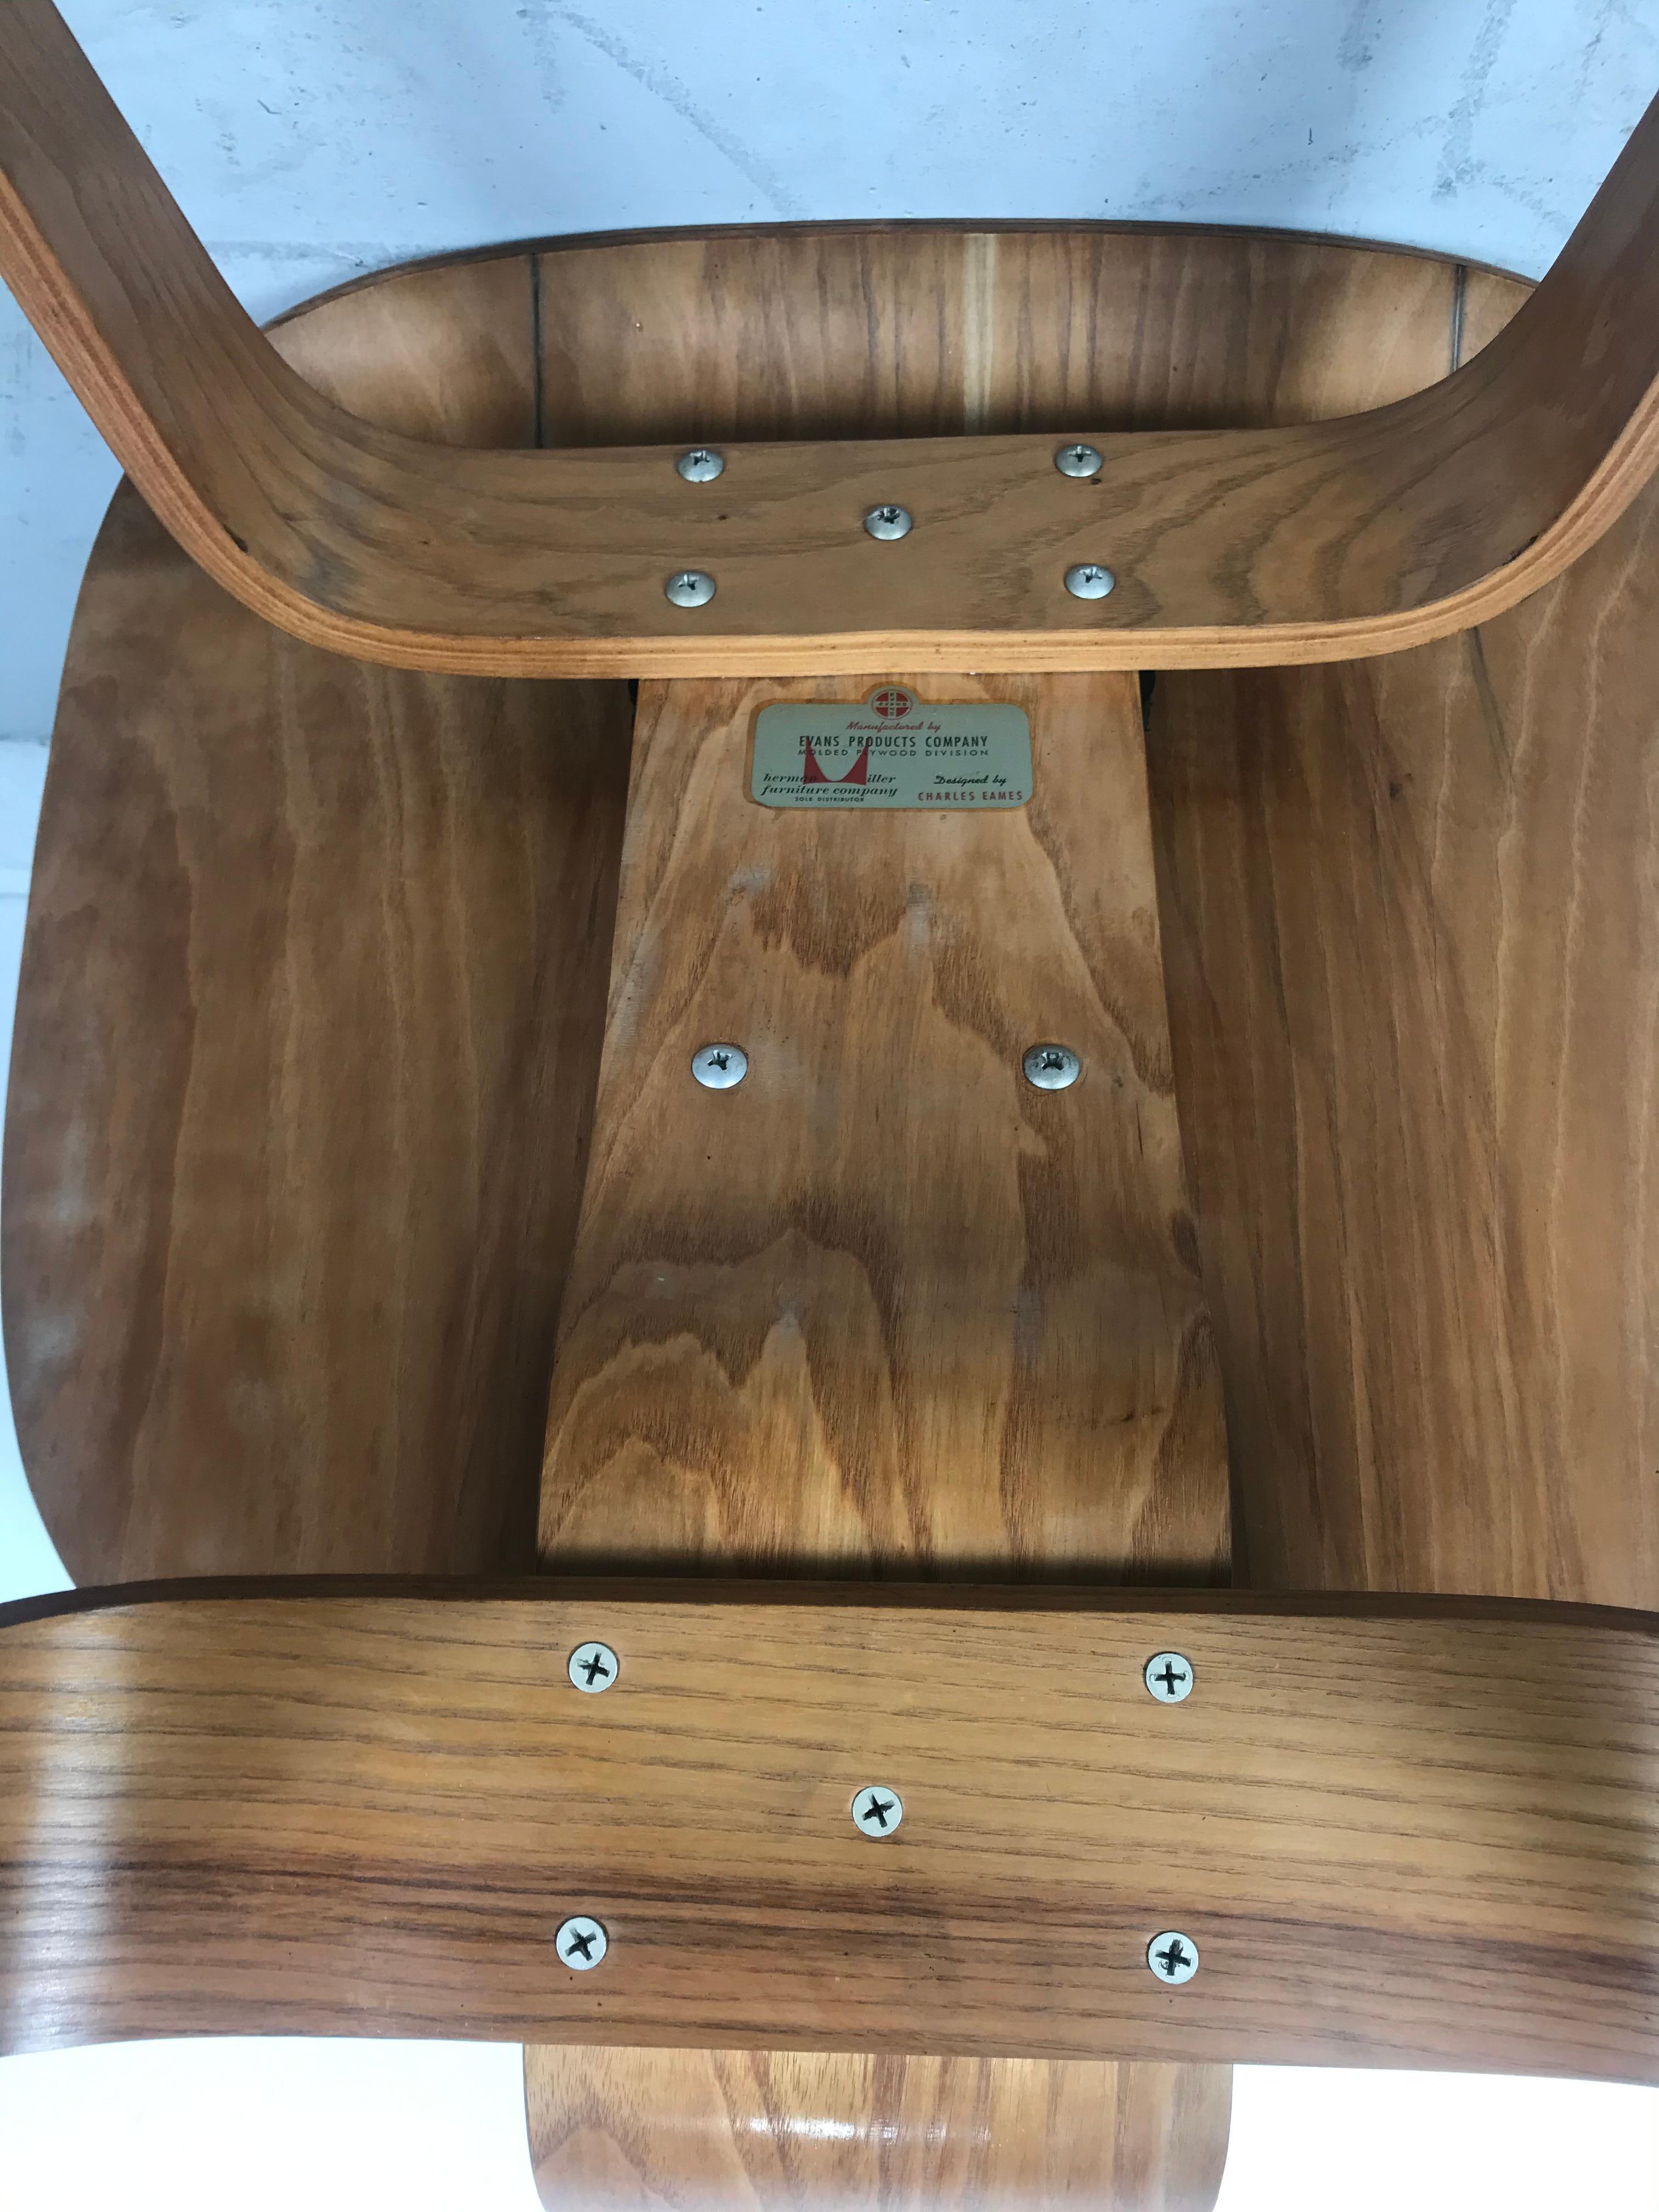 L'un des plus beaux exemples que j'ai possédés depuis longtemps, superbe contreplaqué de bouleau figuré, vers le début des années 1946-1947, A.C&W (Lounge chair wood) conçu par Charles et Ray Eames, fabriqué par Evans / Herman Miller. Il conserve